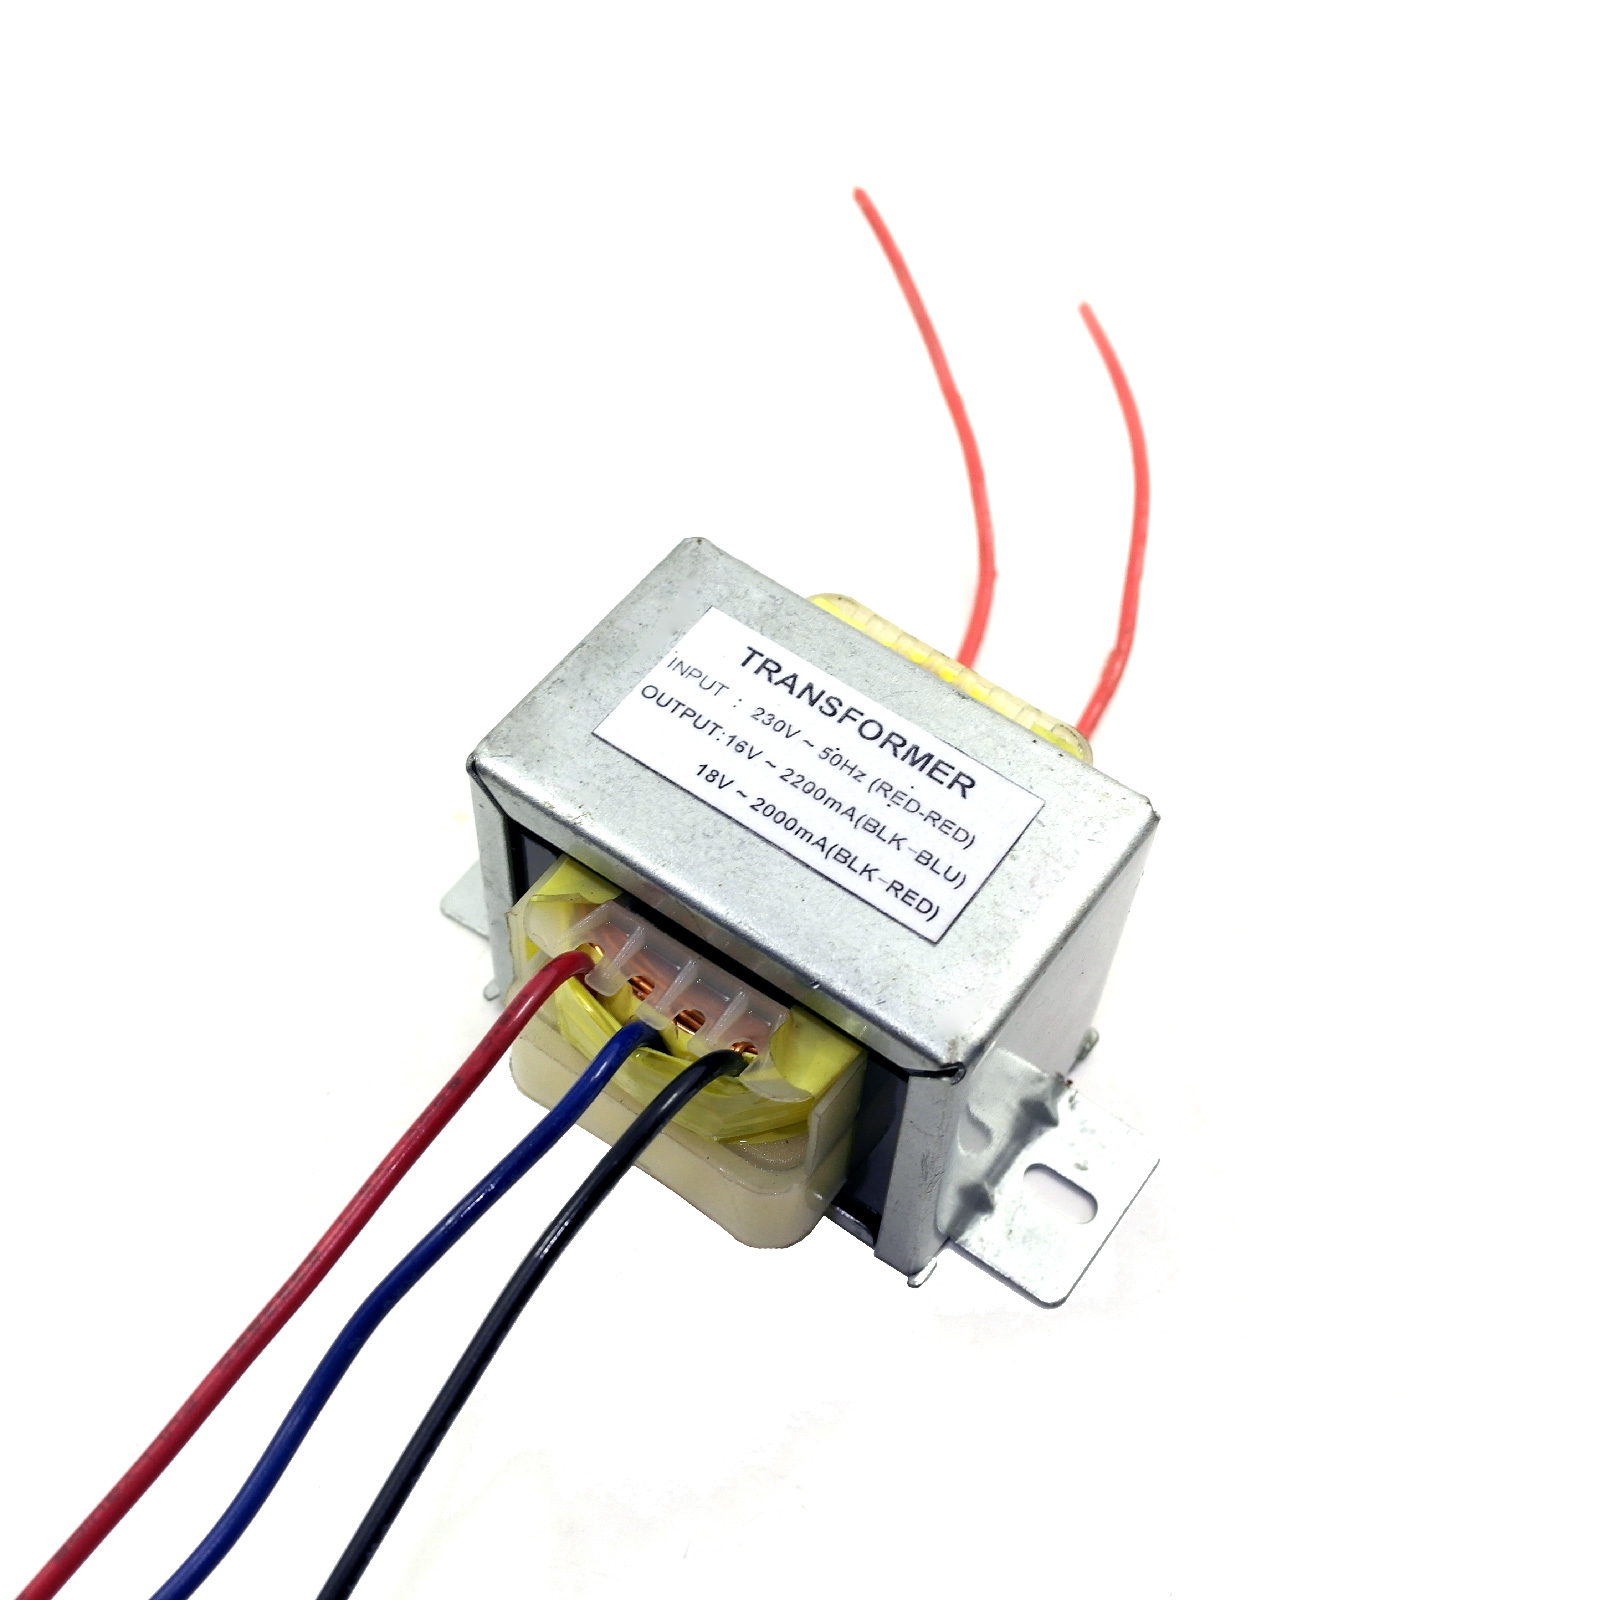 EI66,EI66 power adapter